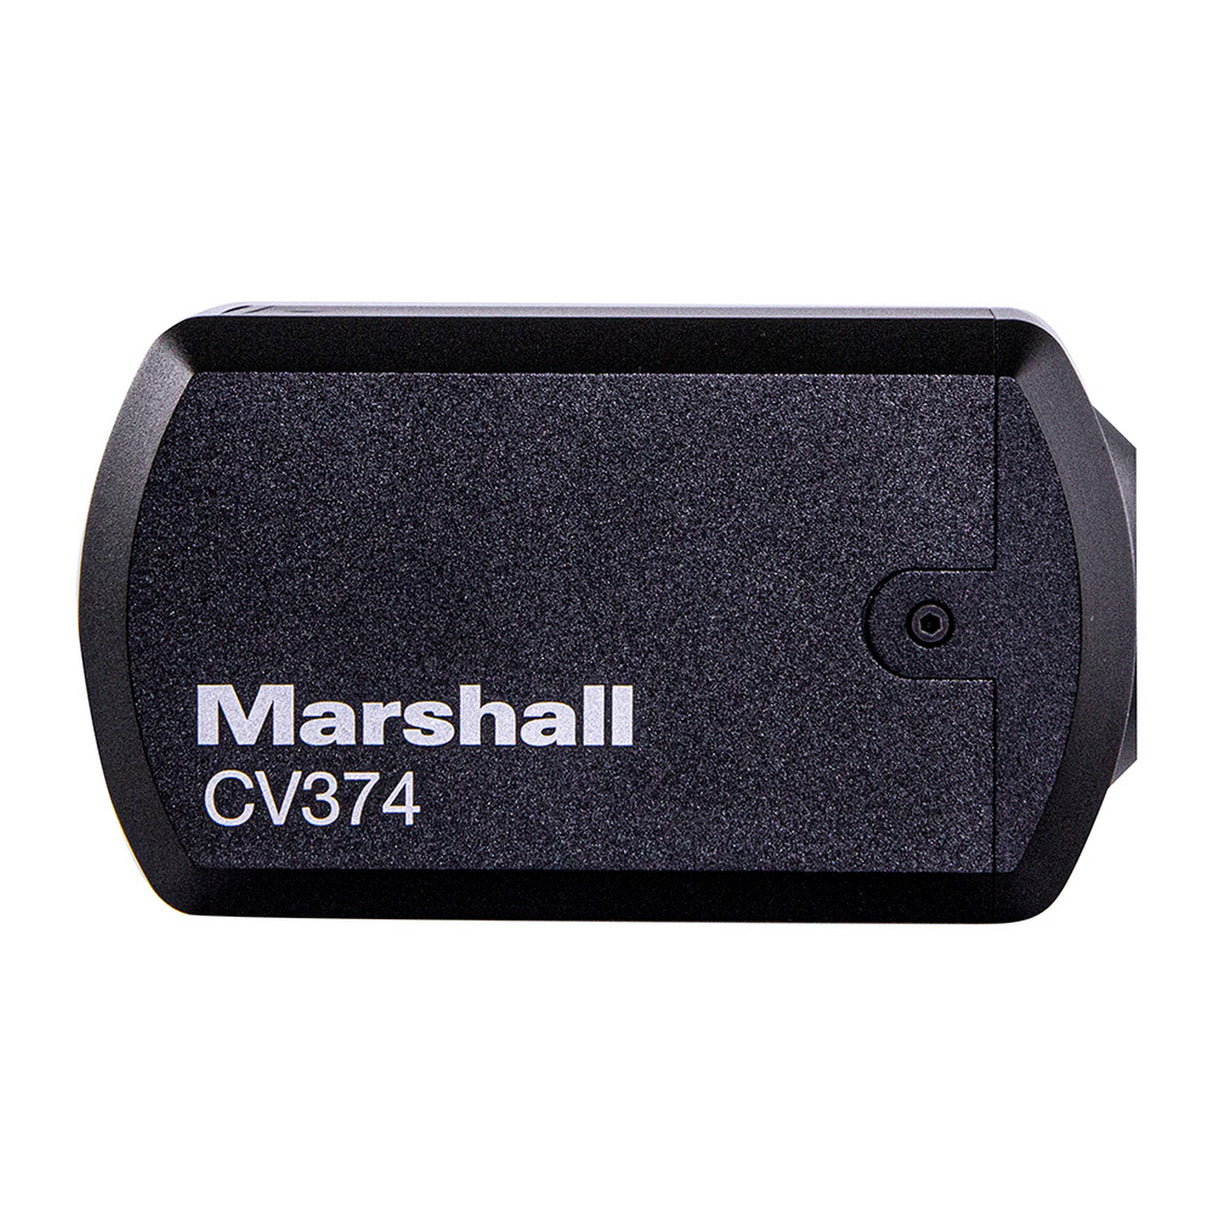 Marshall CV374 NDI|HX3 and HDMI Compact 4K UHD Camera